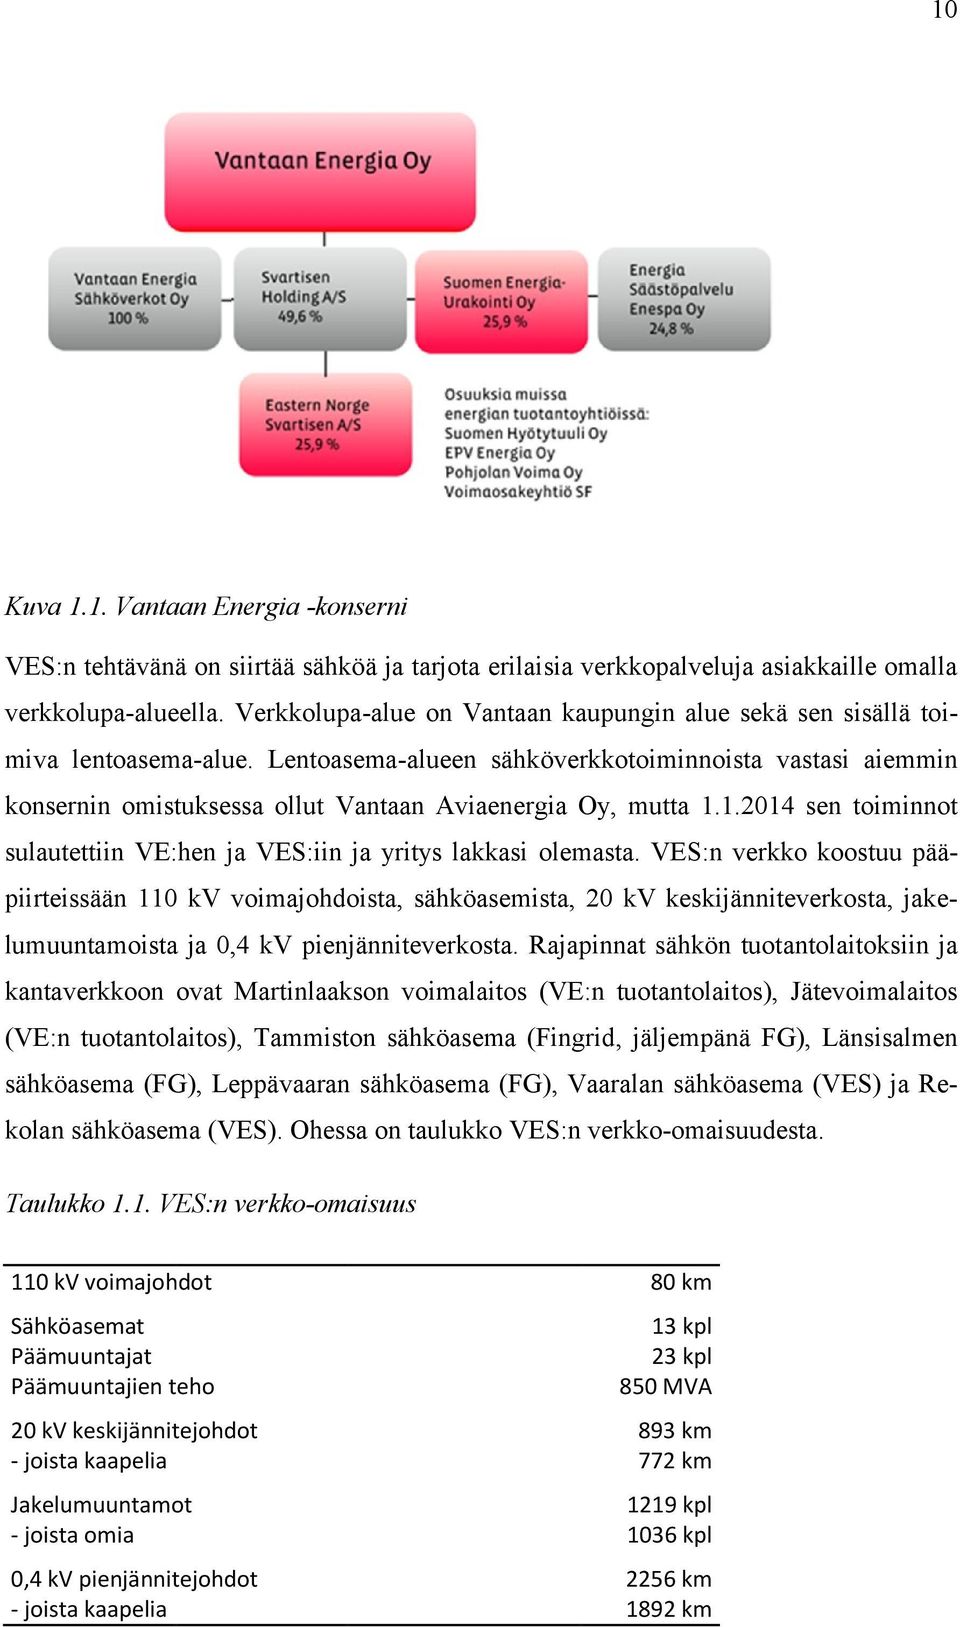 Lentoasema-alueen sähköverkkotoiminnoista vastasi aiemmin konsernin omistuksessa ollut Vantaan Aviaenergia Oy, mutta 1.1.2014 sen toiminnot sulautettiin VE:hen ja VES:iin ja yritys lakkasi olemasta.